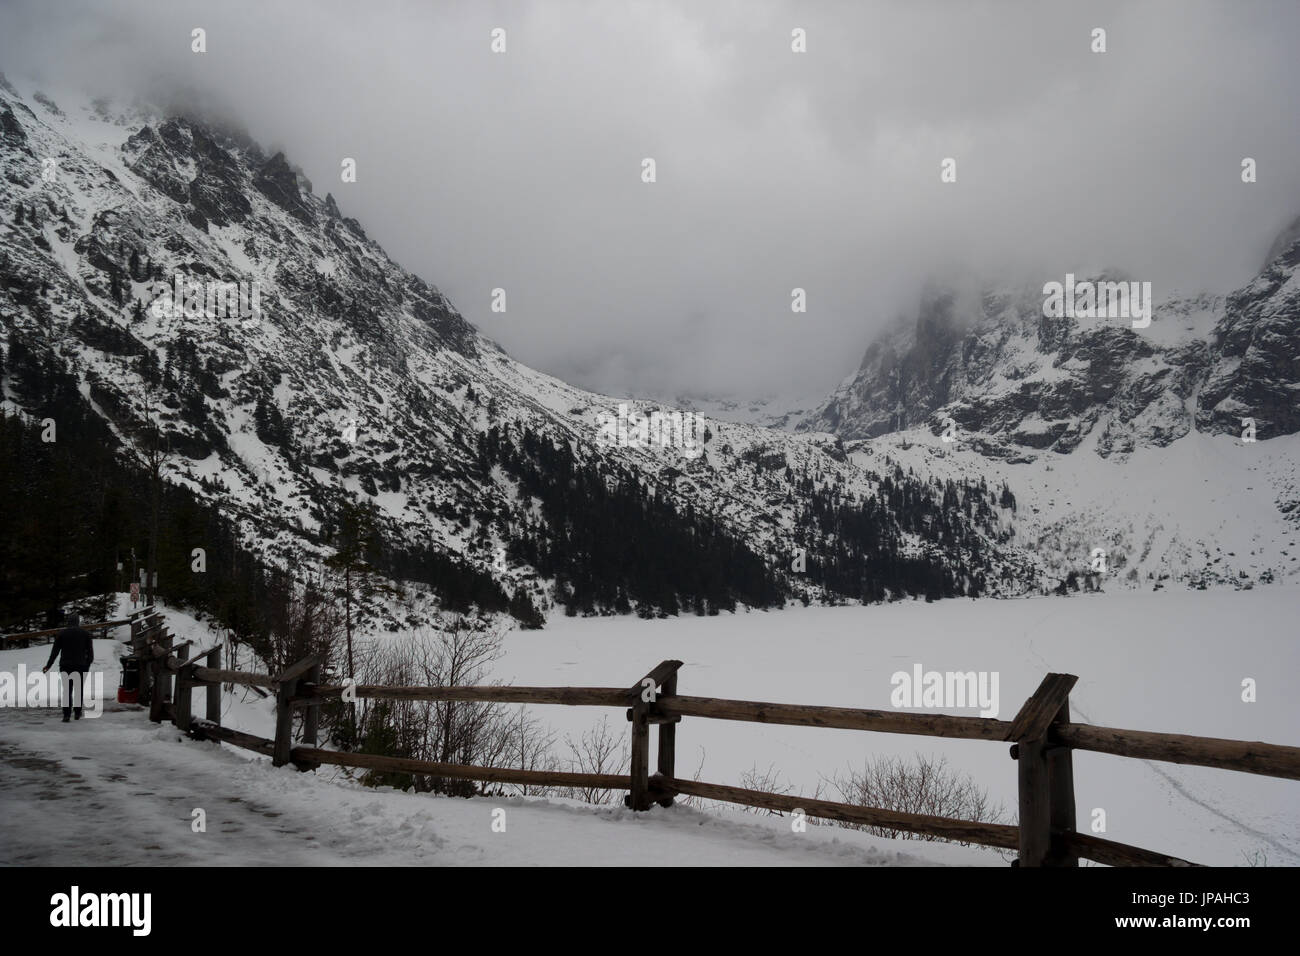 Morskie Oko mountain lake in winter, Tatra Mountains Stock Photo